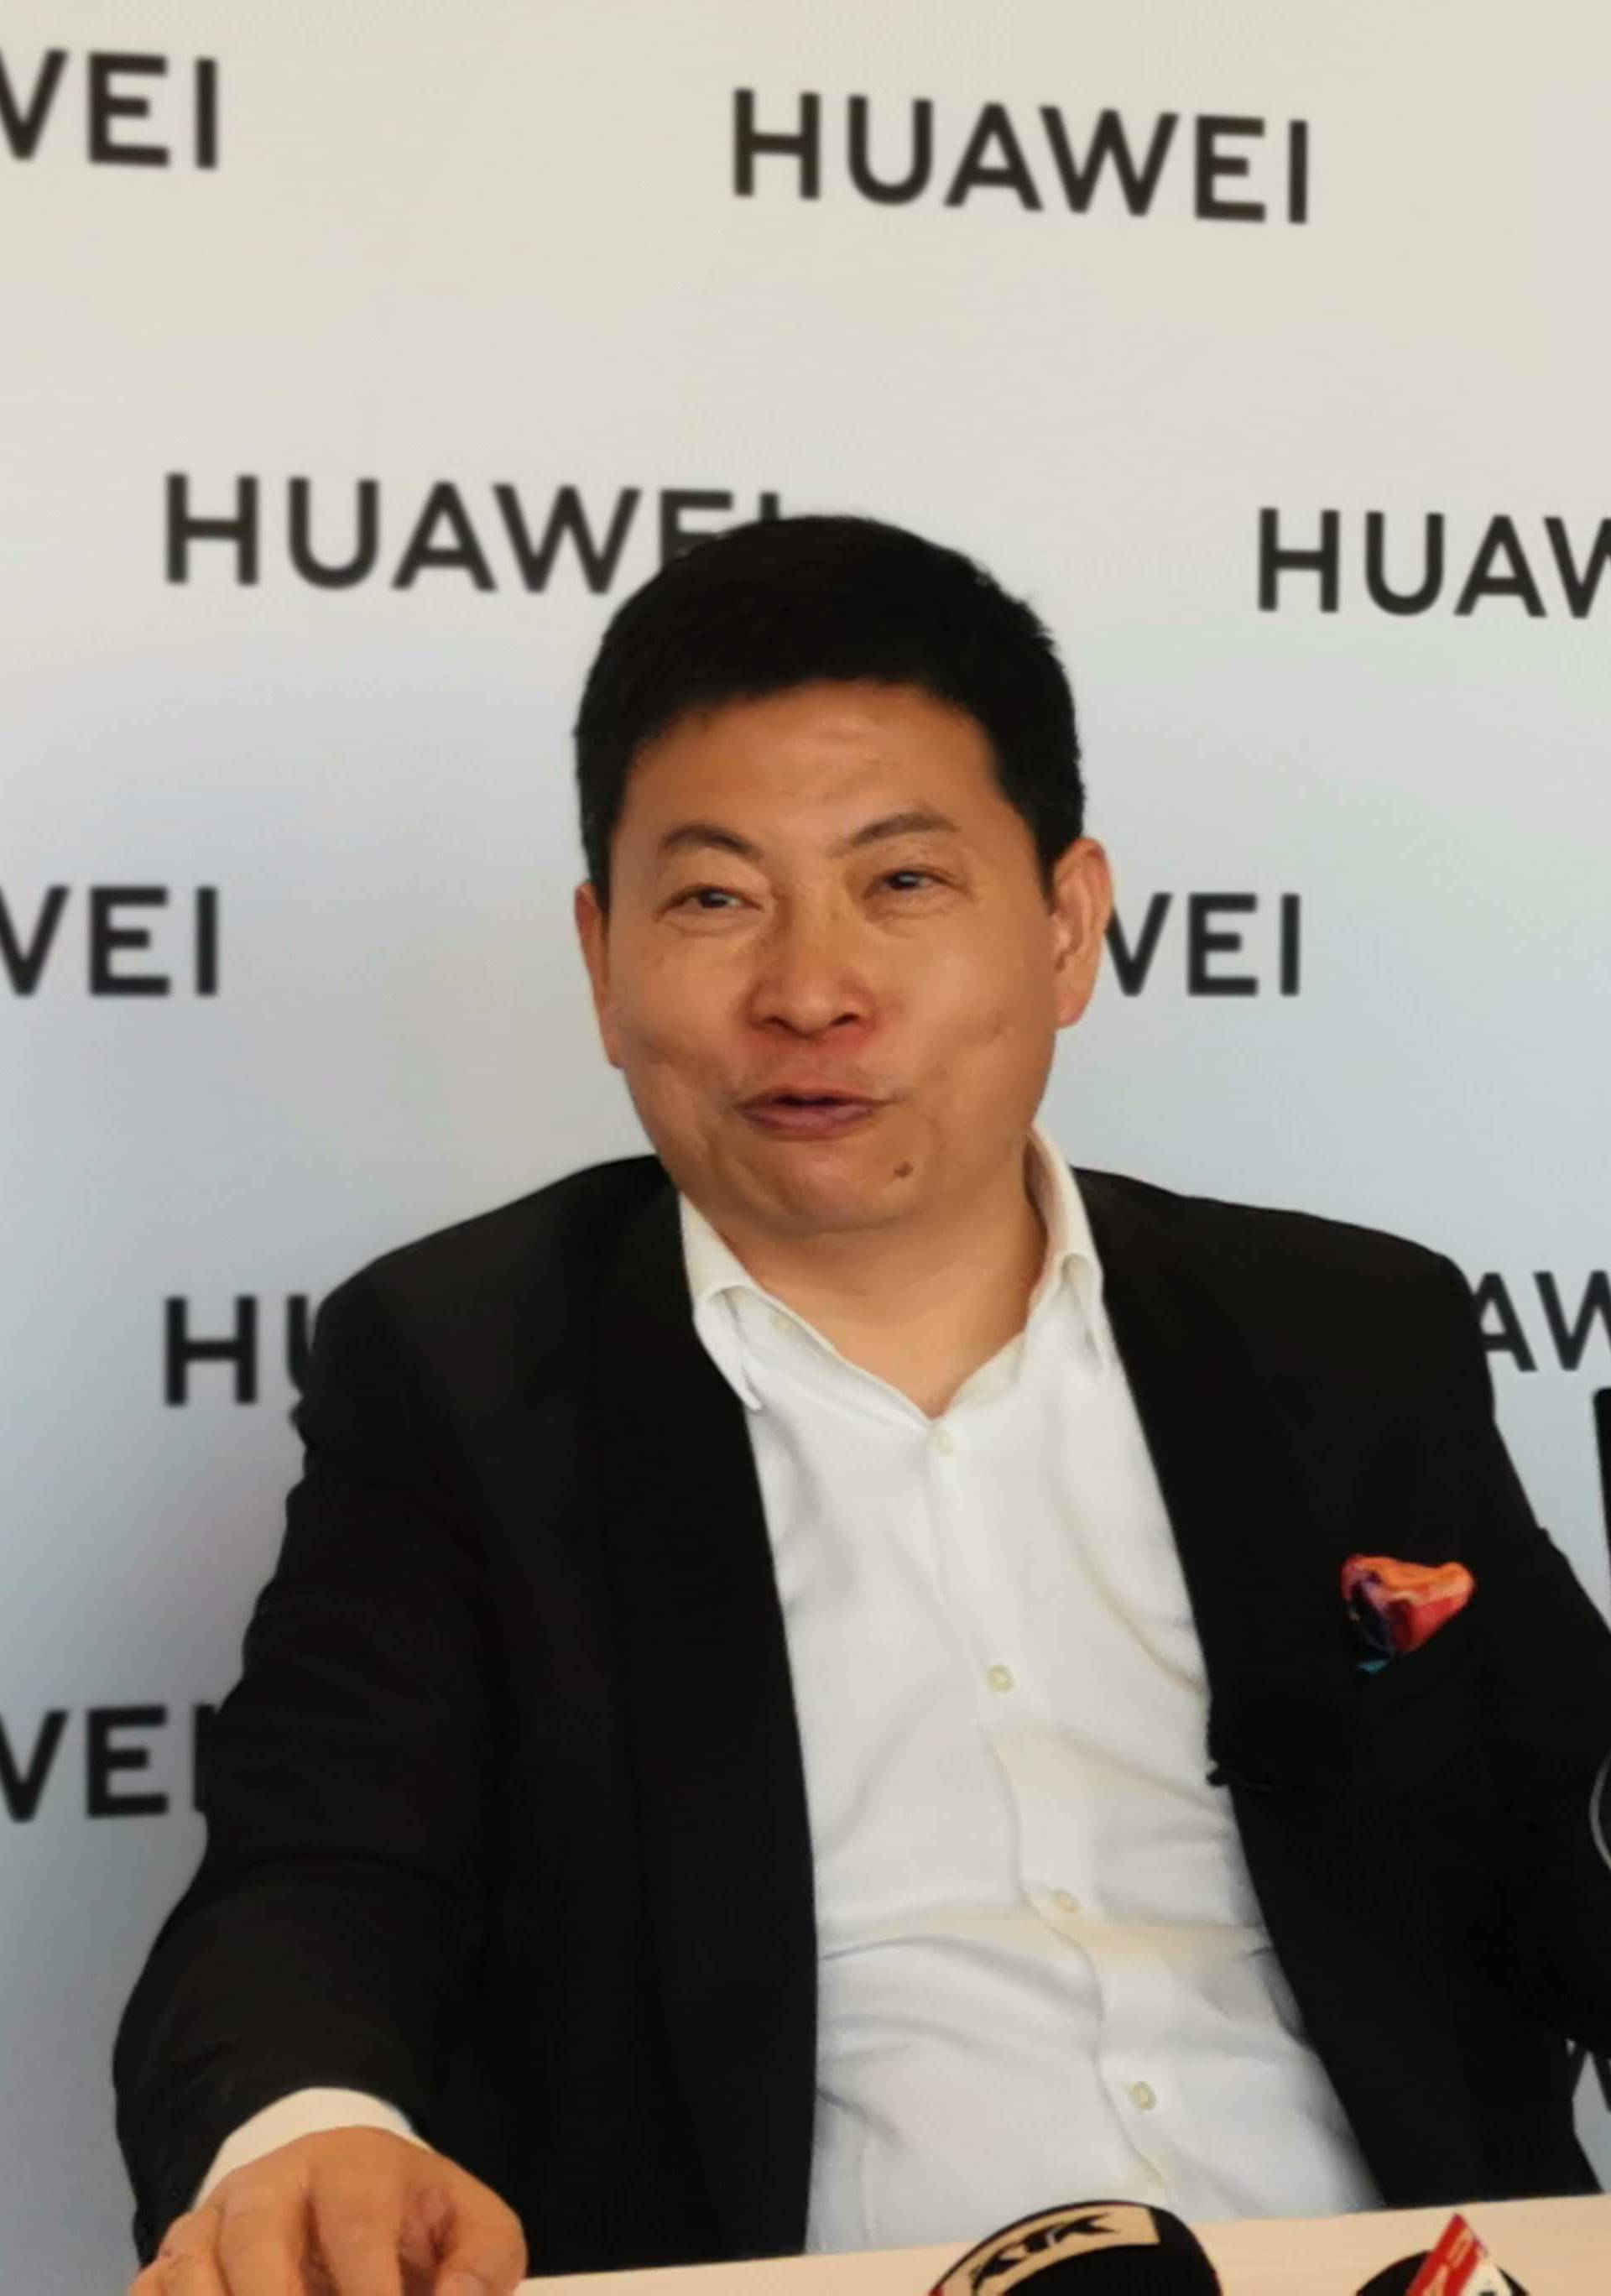 Huawei: Nastavi li se zabrana, brzo ćemo imati vlastiti sustav